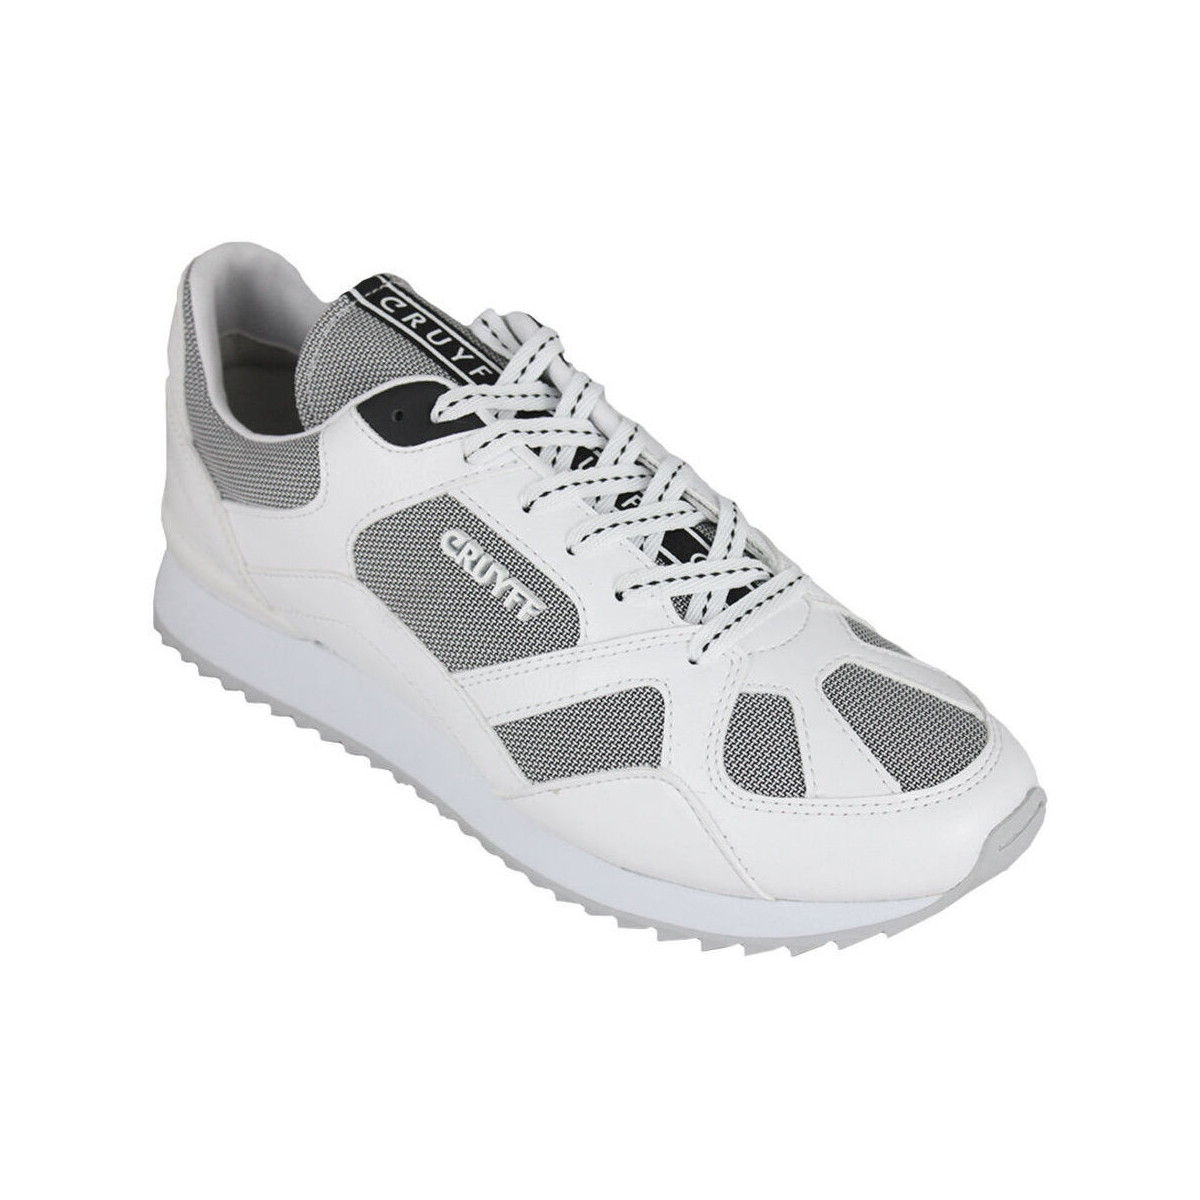 Cruyff  Sneakers Cruyff Catorce CC7870201 410 White